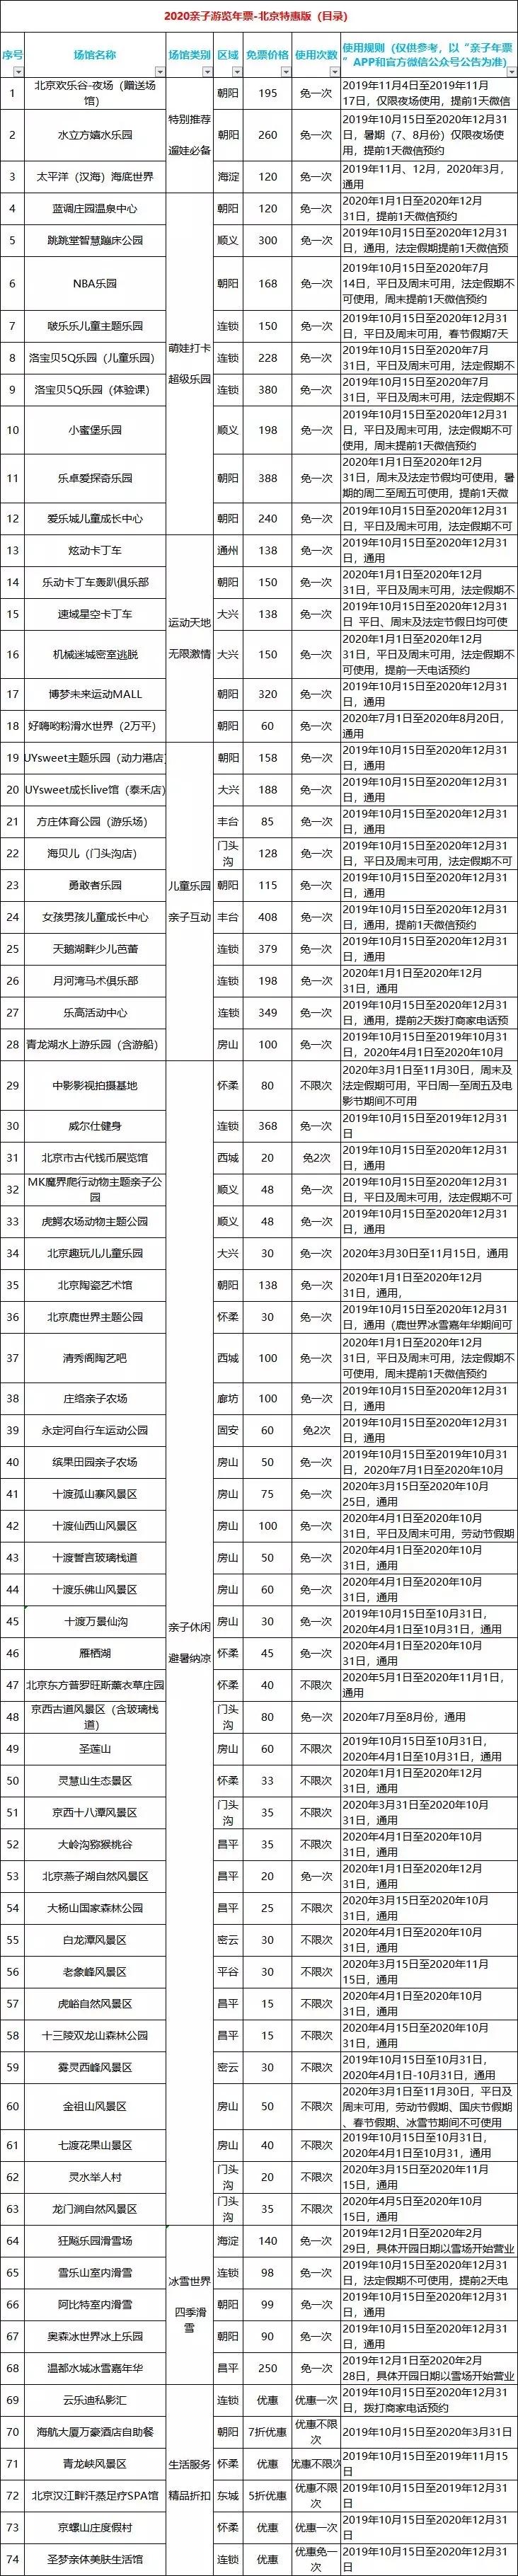 2020北京亲子年票价格+景点名单+常见问题